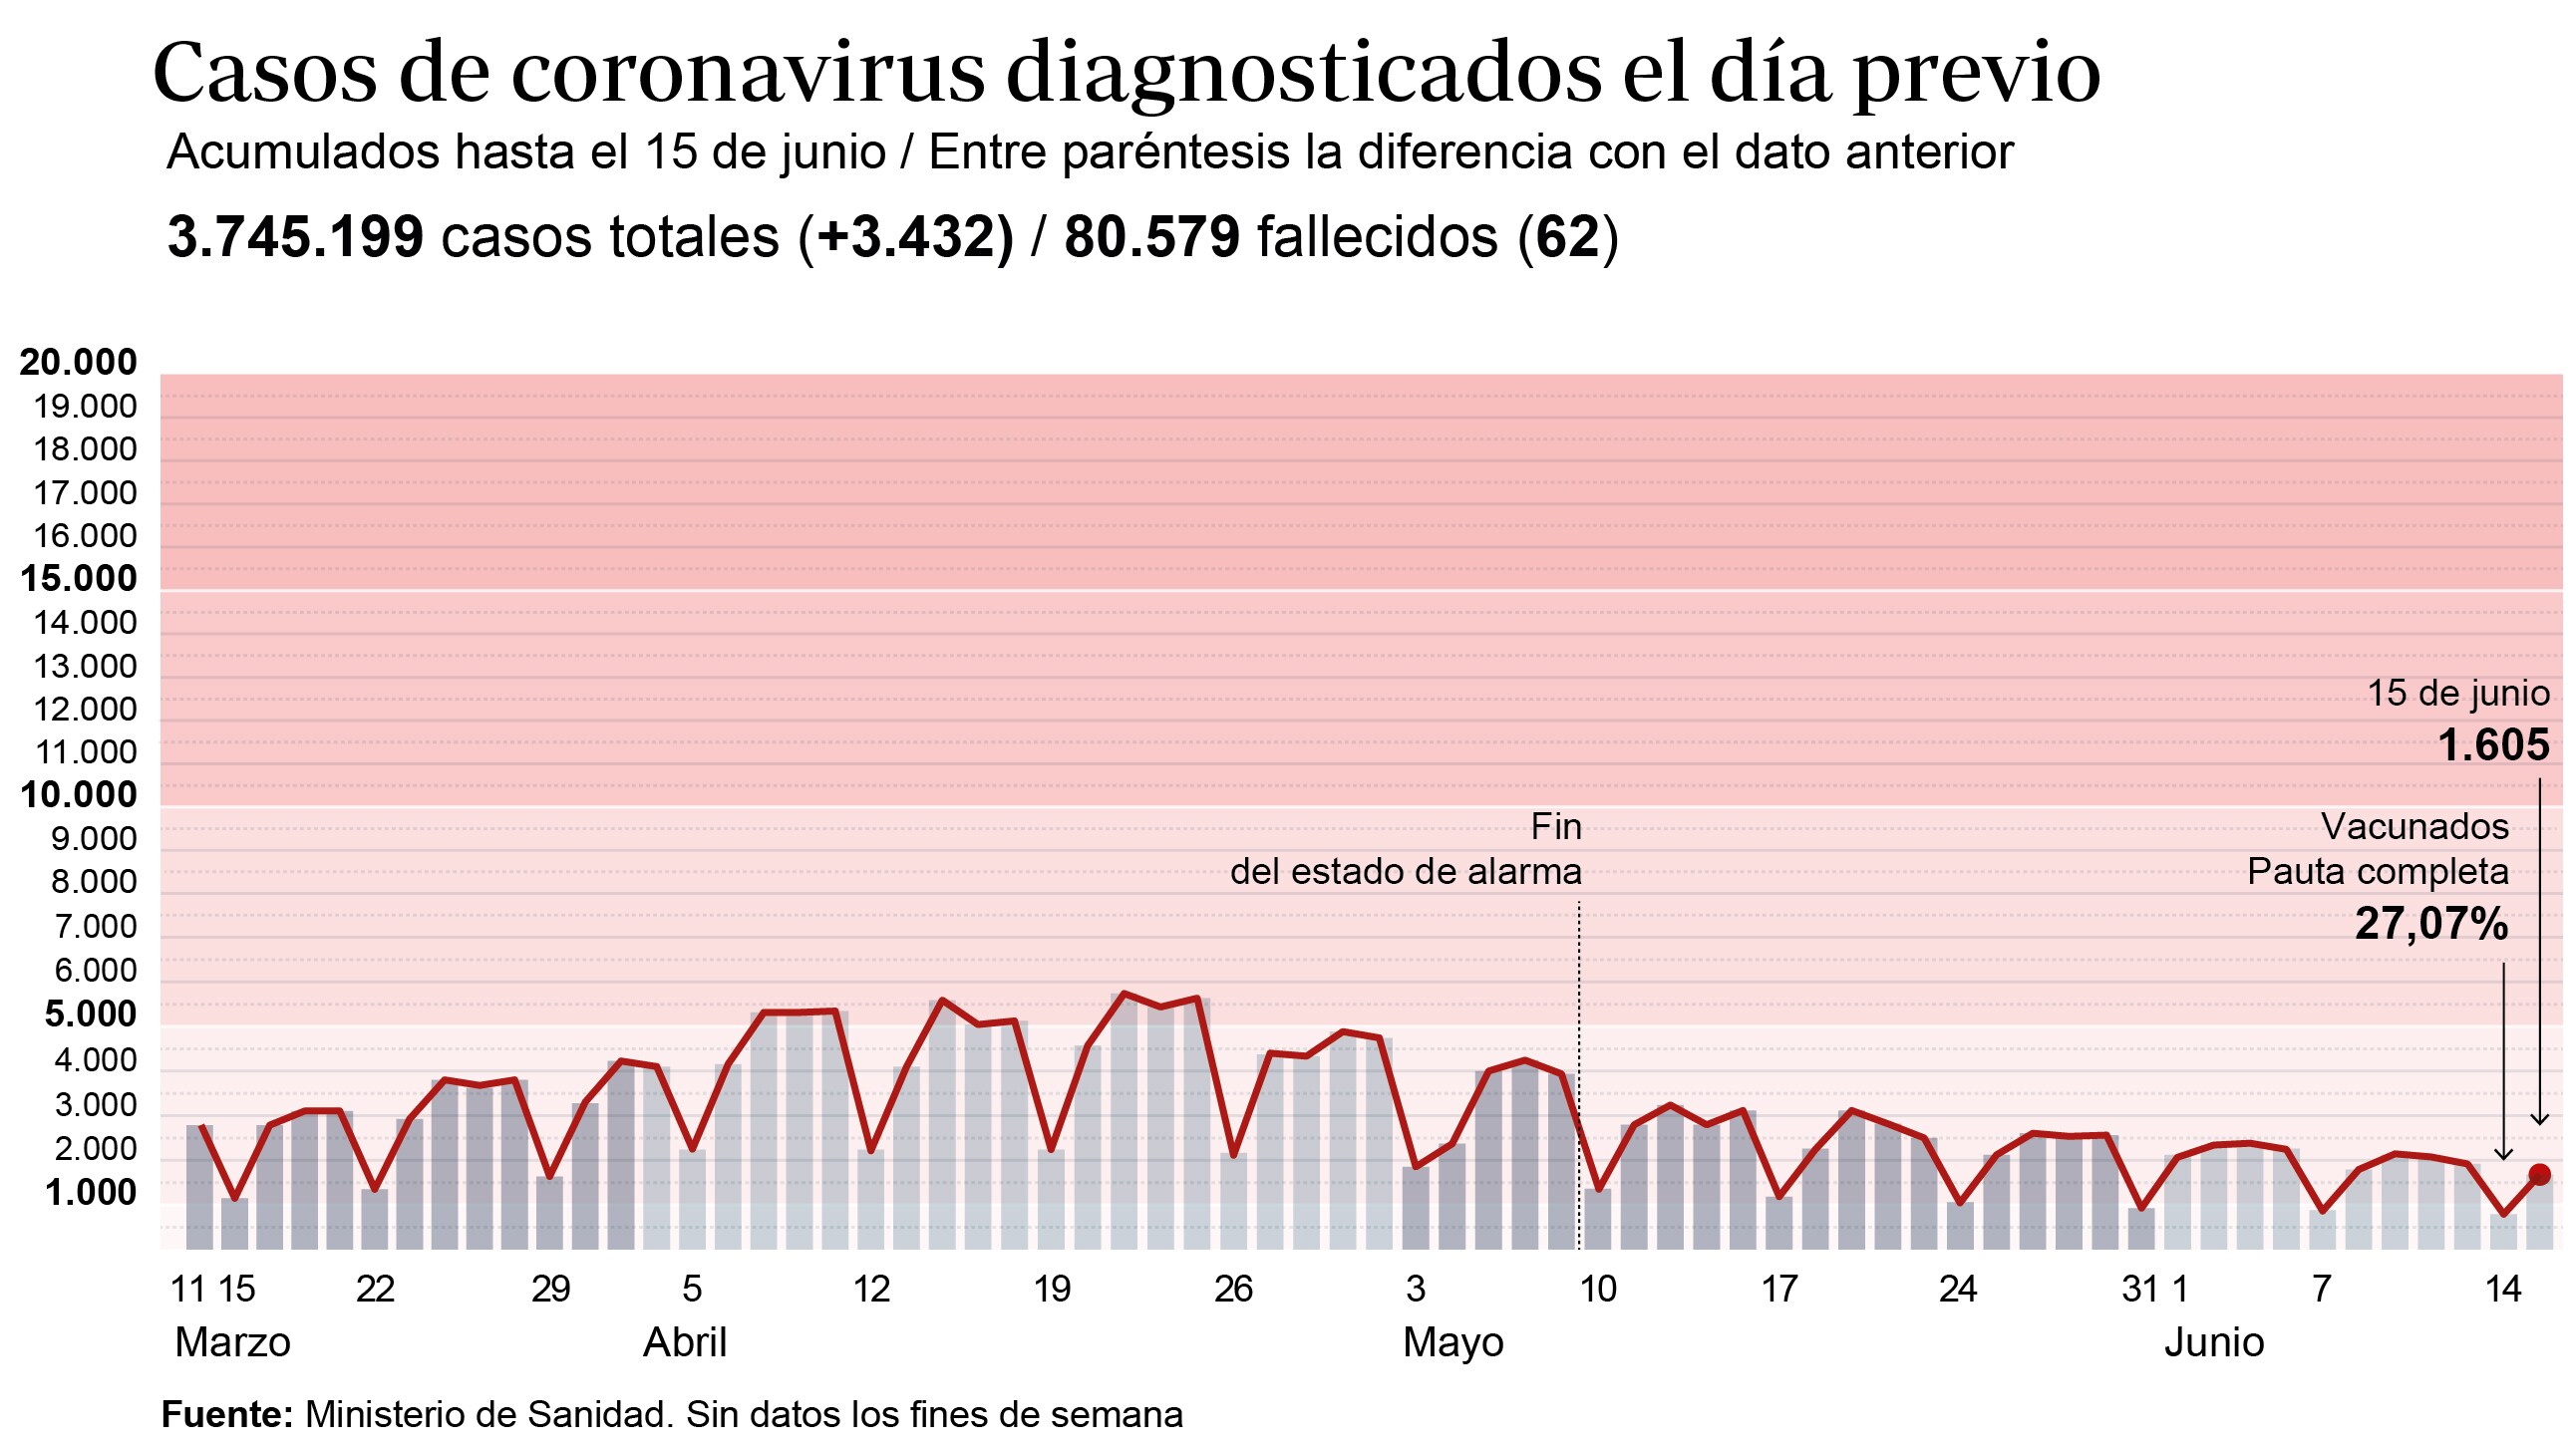 coronavirus espana hoy sanidad notifica 3 432 nuevos contagios y 62 fallecidos en las ultimas 24 horas